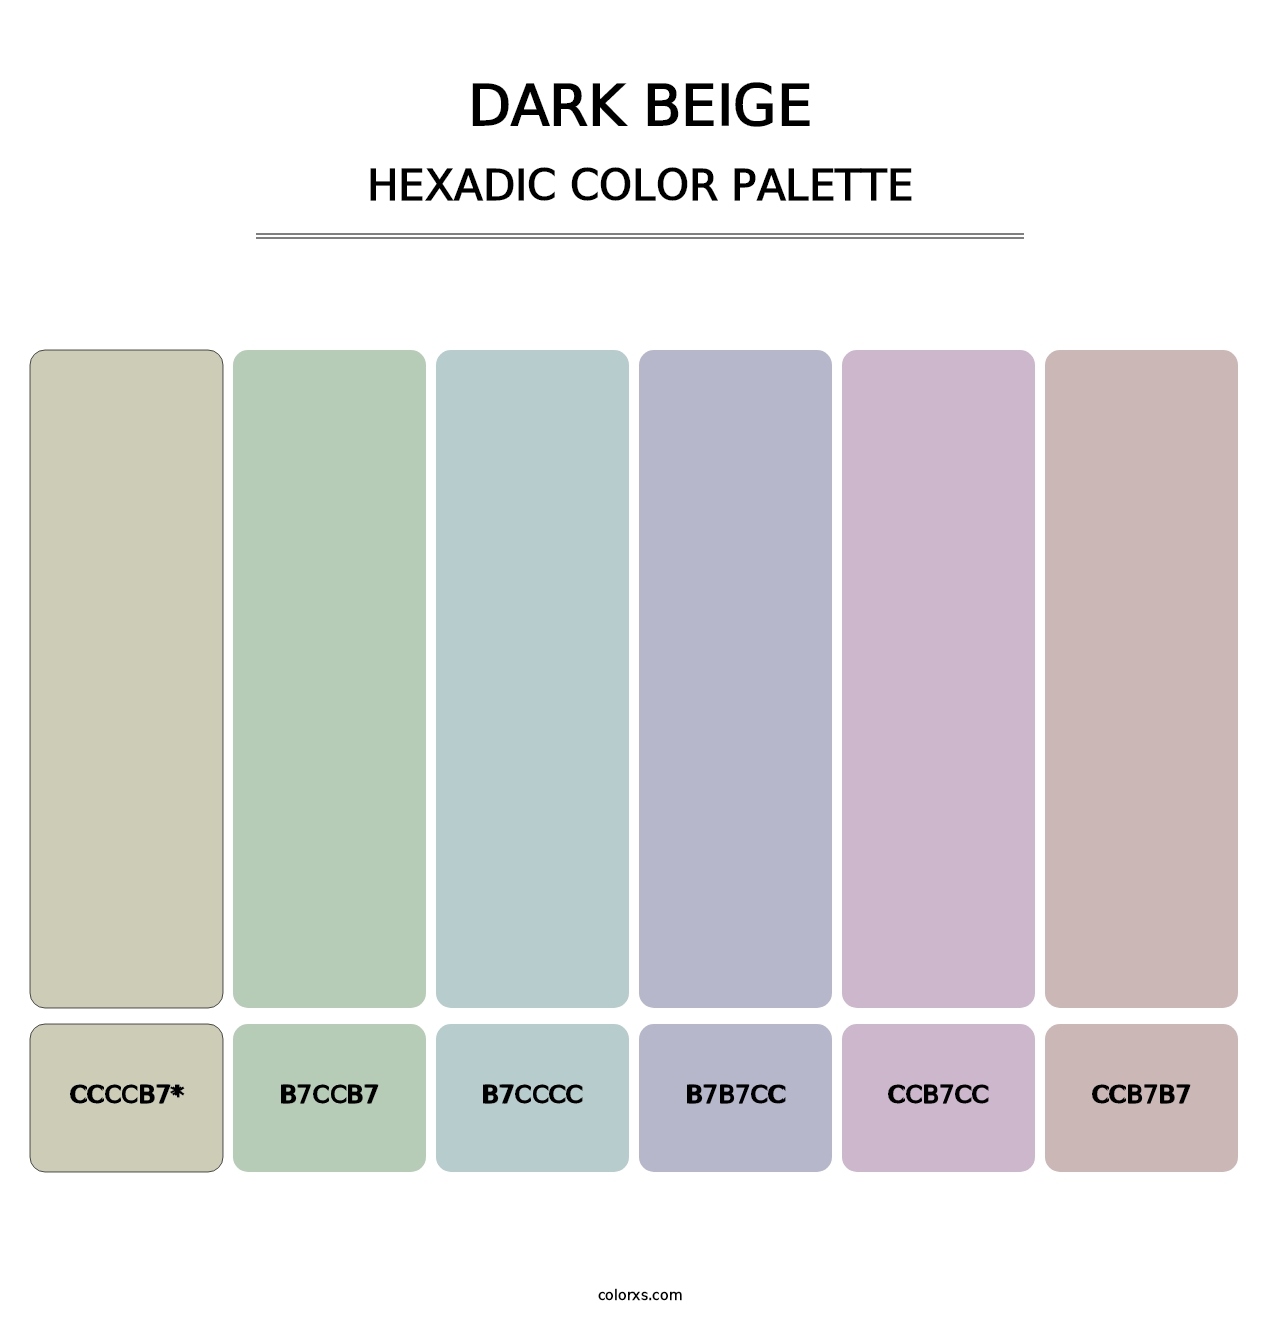 Dark Beige - Hexadic Color Palette